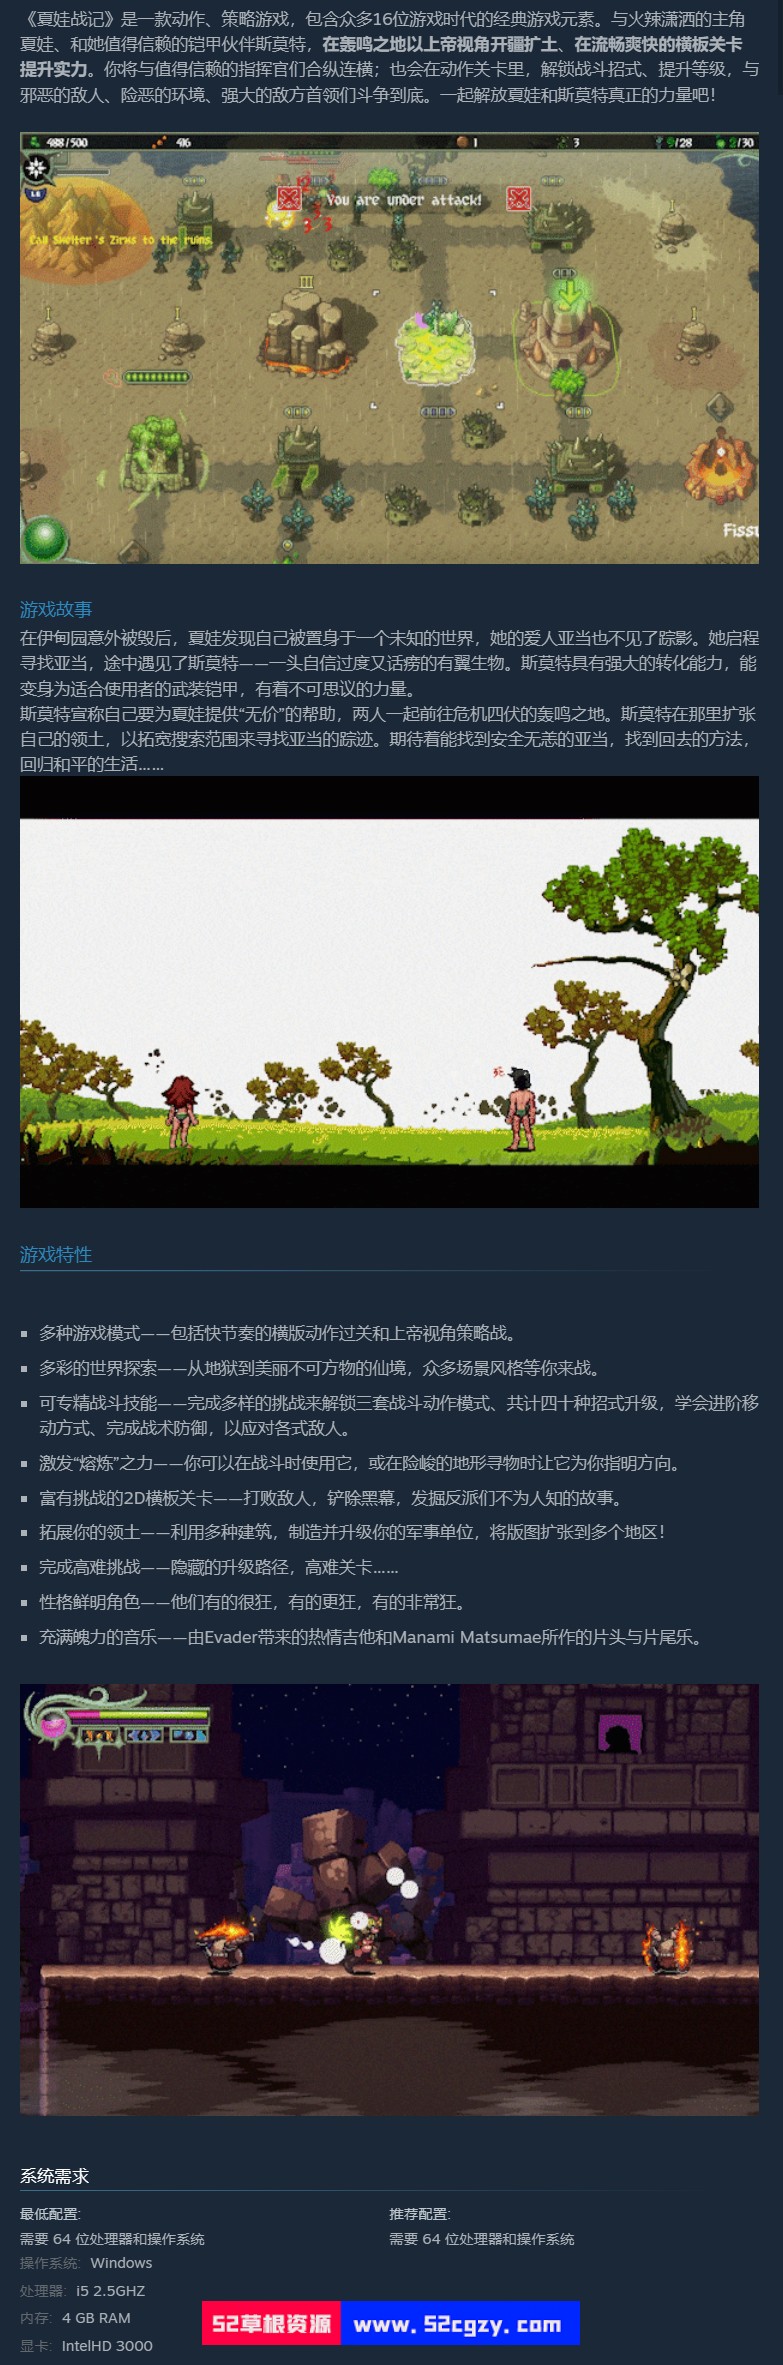 《夏娃战纪》免安装v2.0.0绿色中文版[335MB] 单机游戏 第8张